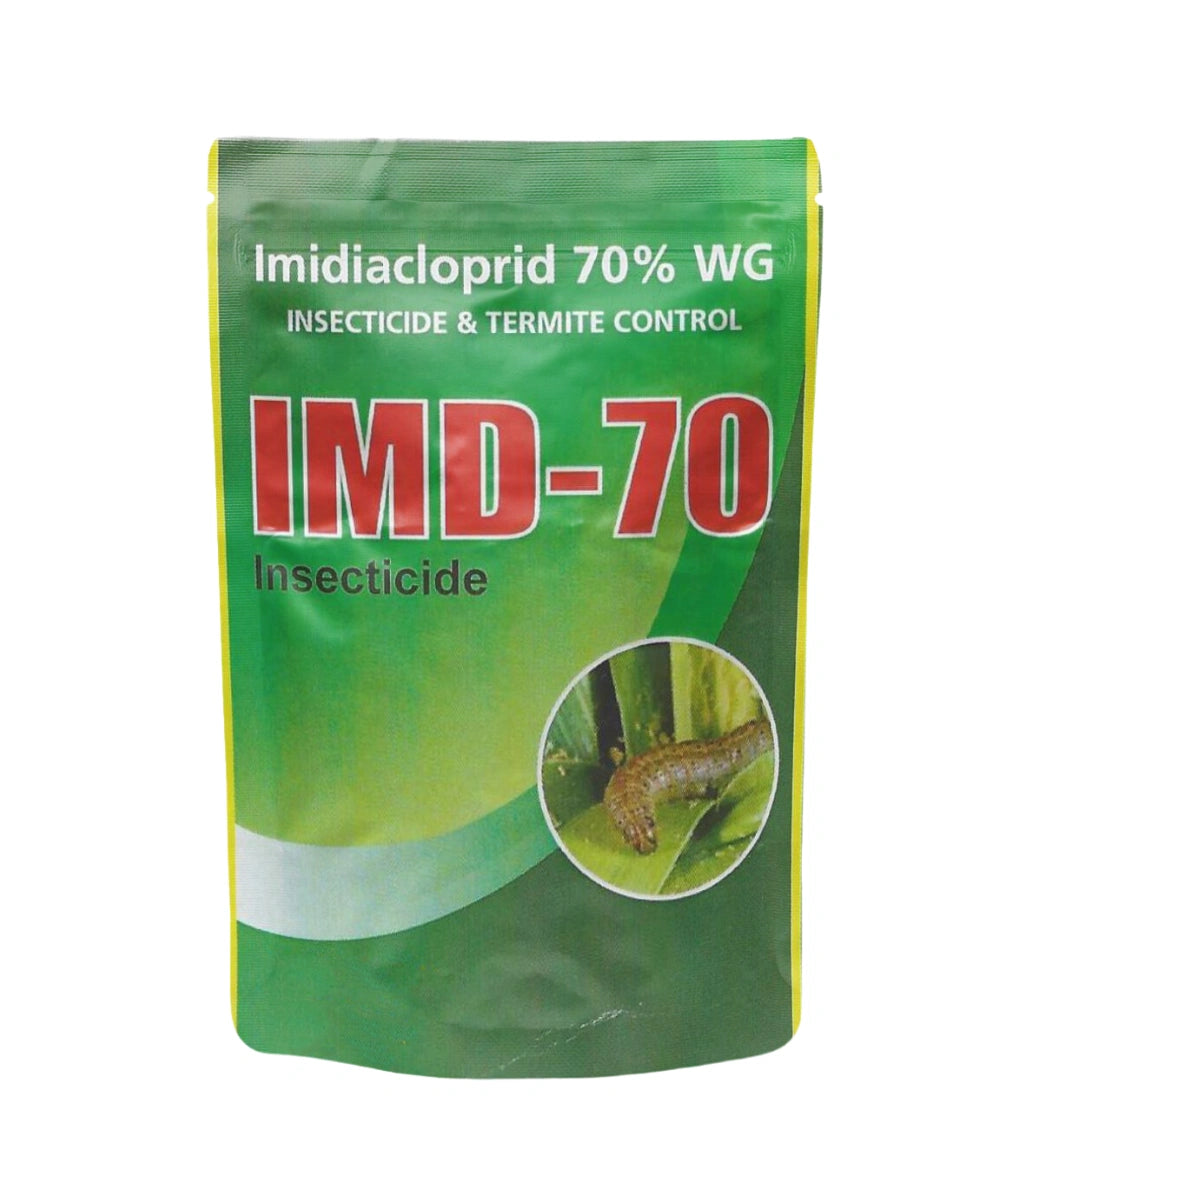 कात्यायनी आईएमडी-70 इमिडाक्लोप्रिड 70% डब्लूजी